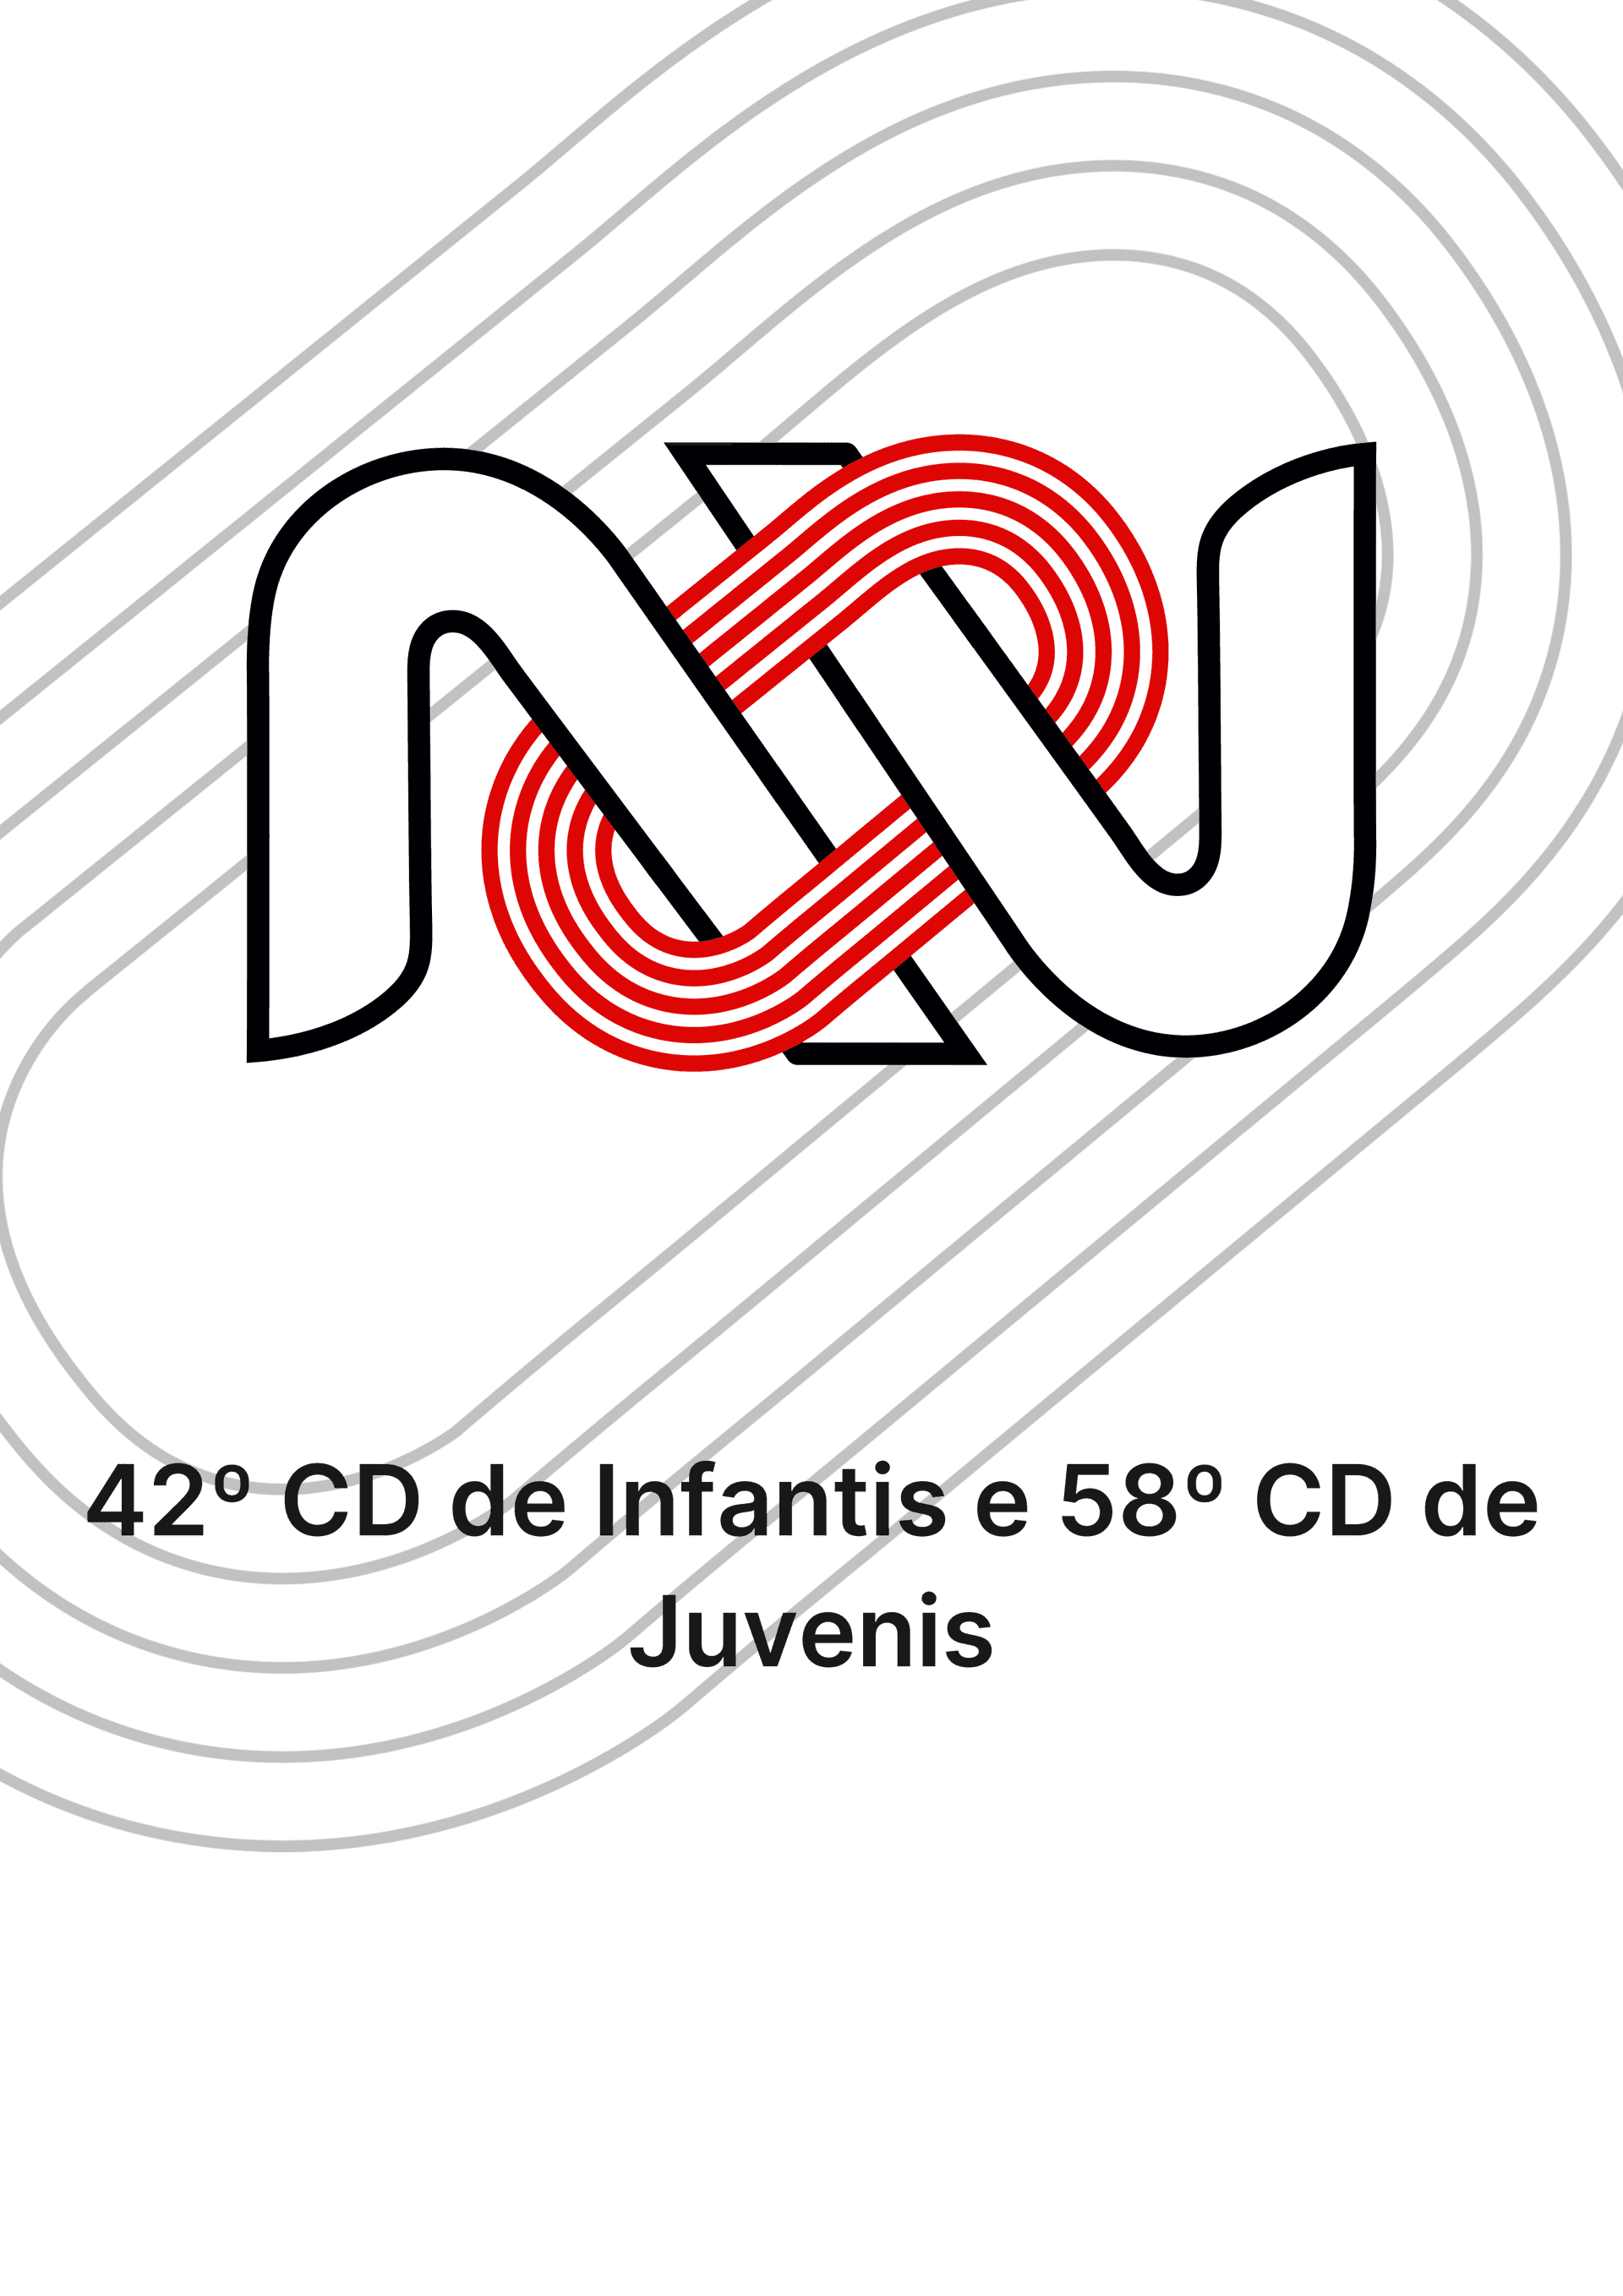 42º CD de Infantis e 58º CD de Juvenis